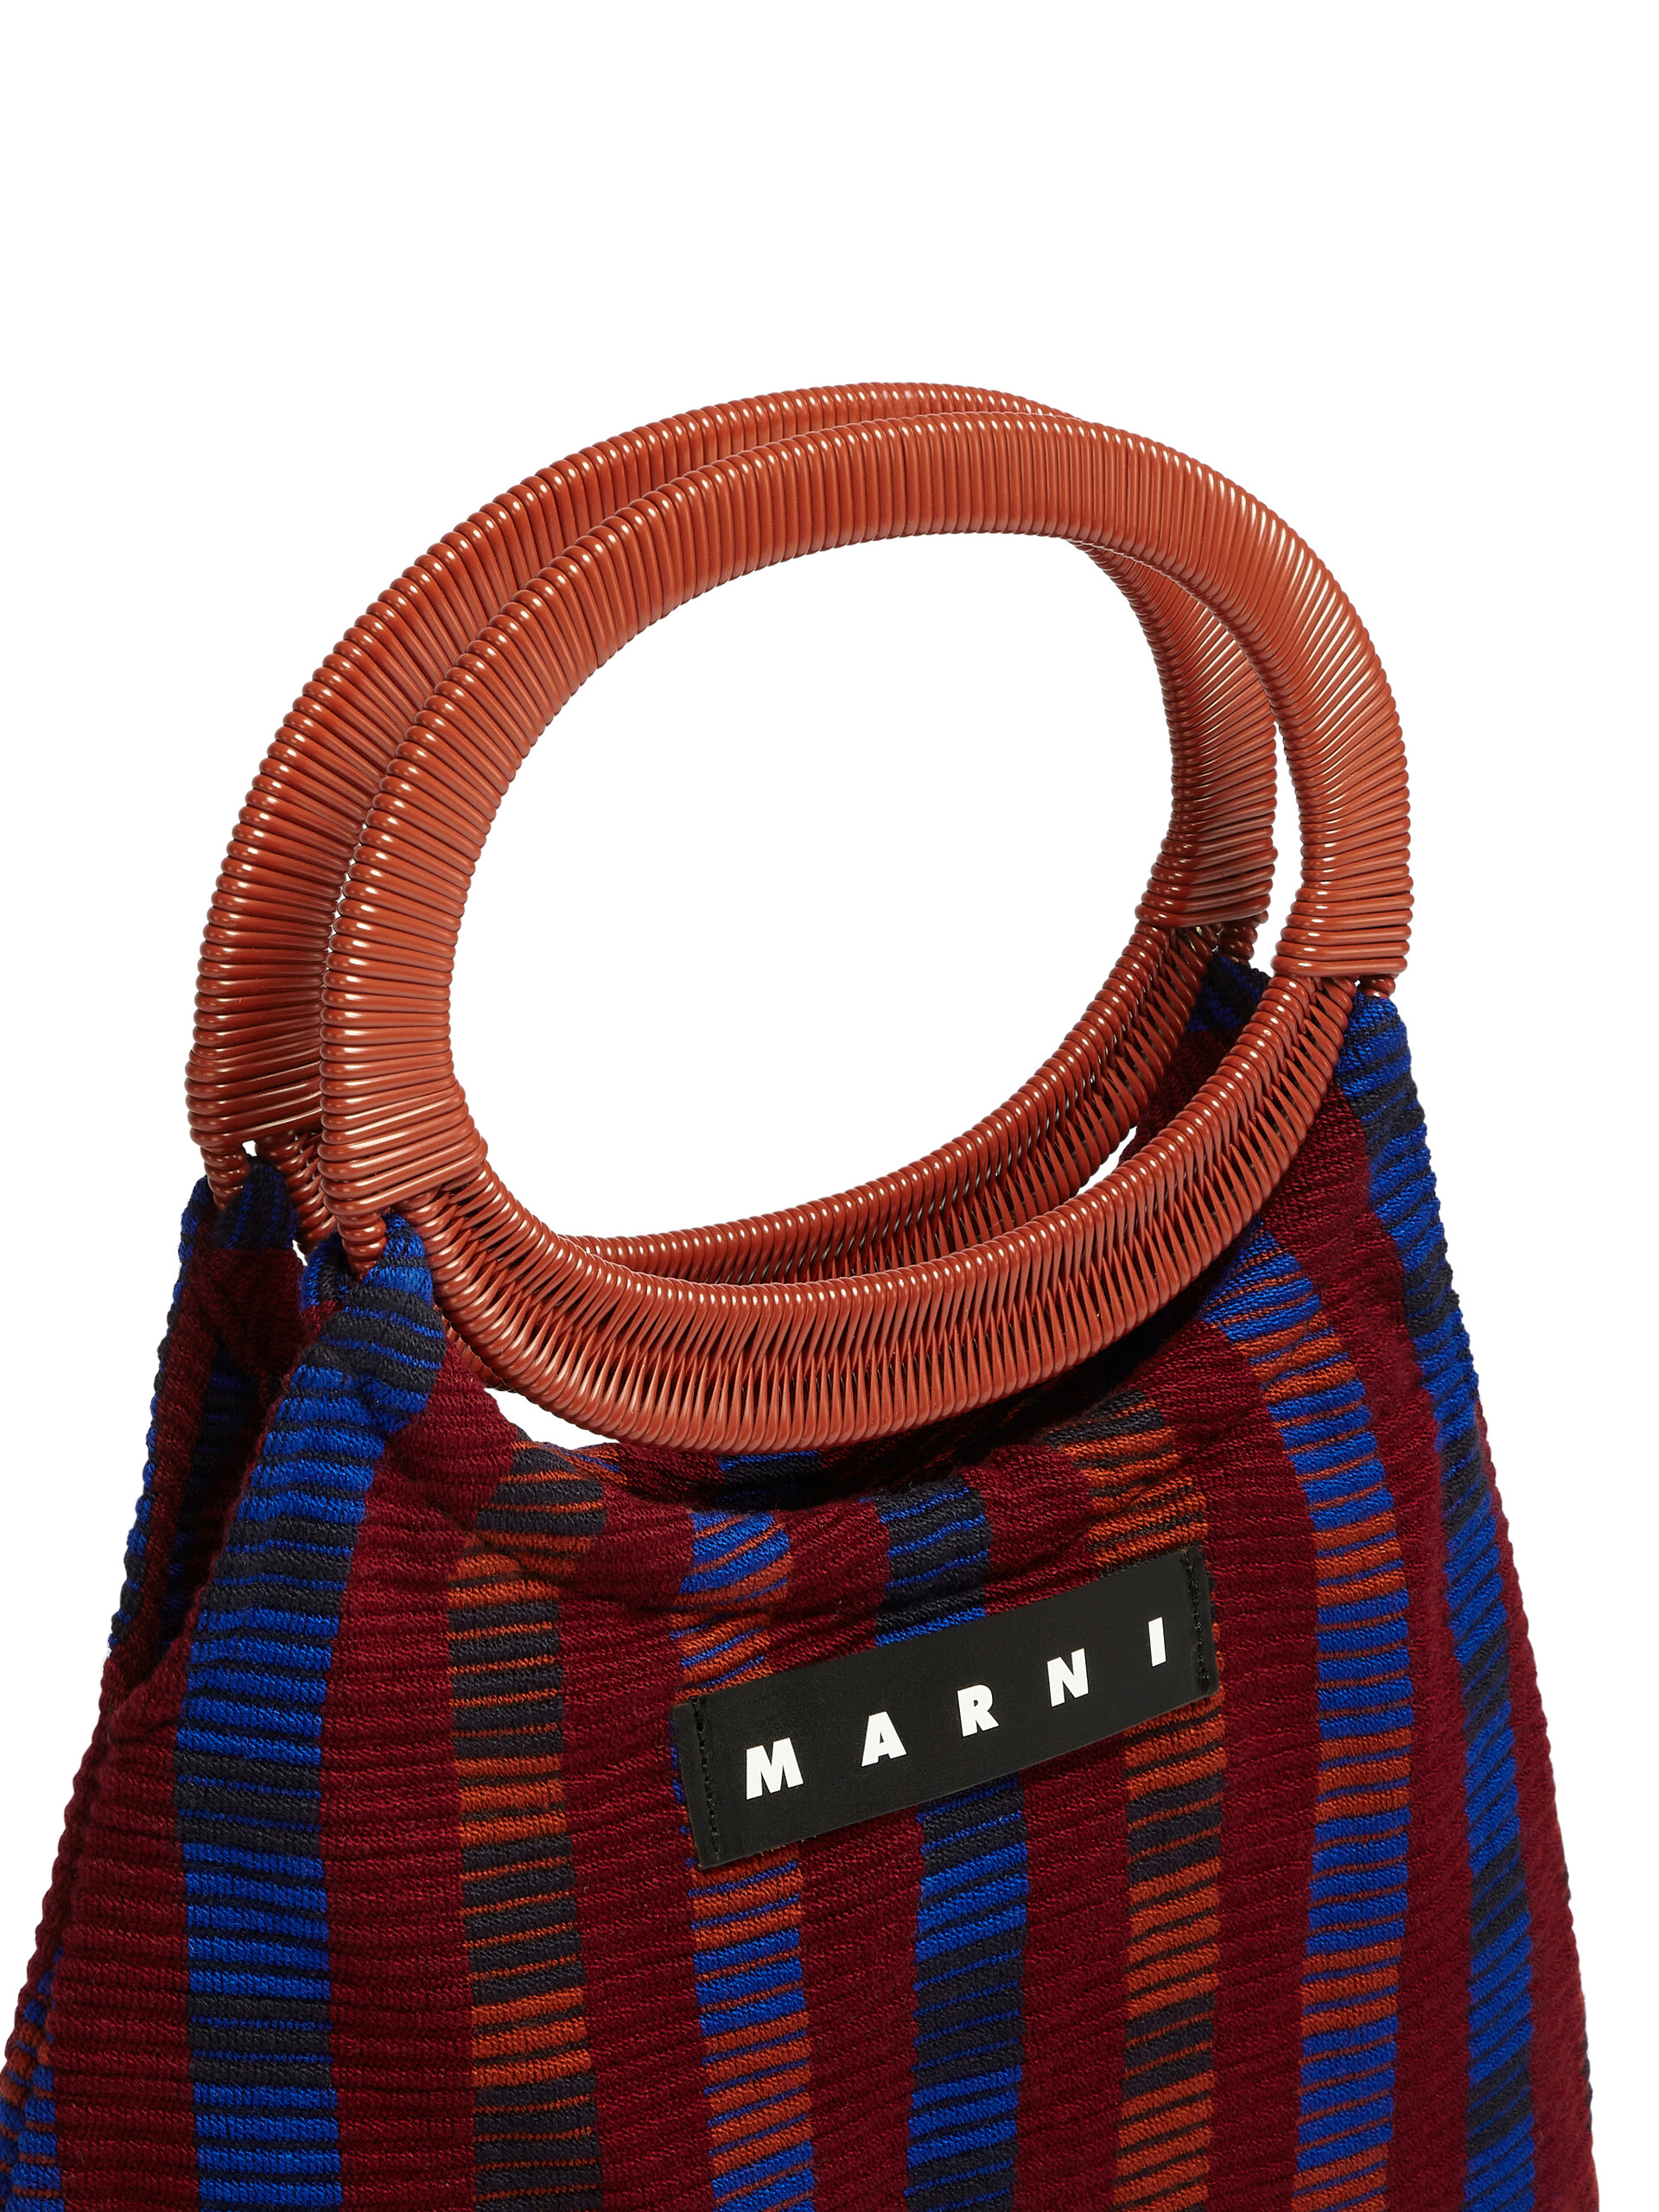 MARNI MARKET BOAT bag in multicolor striped cotton | Marni